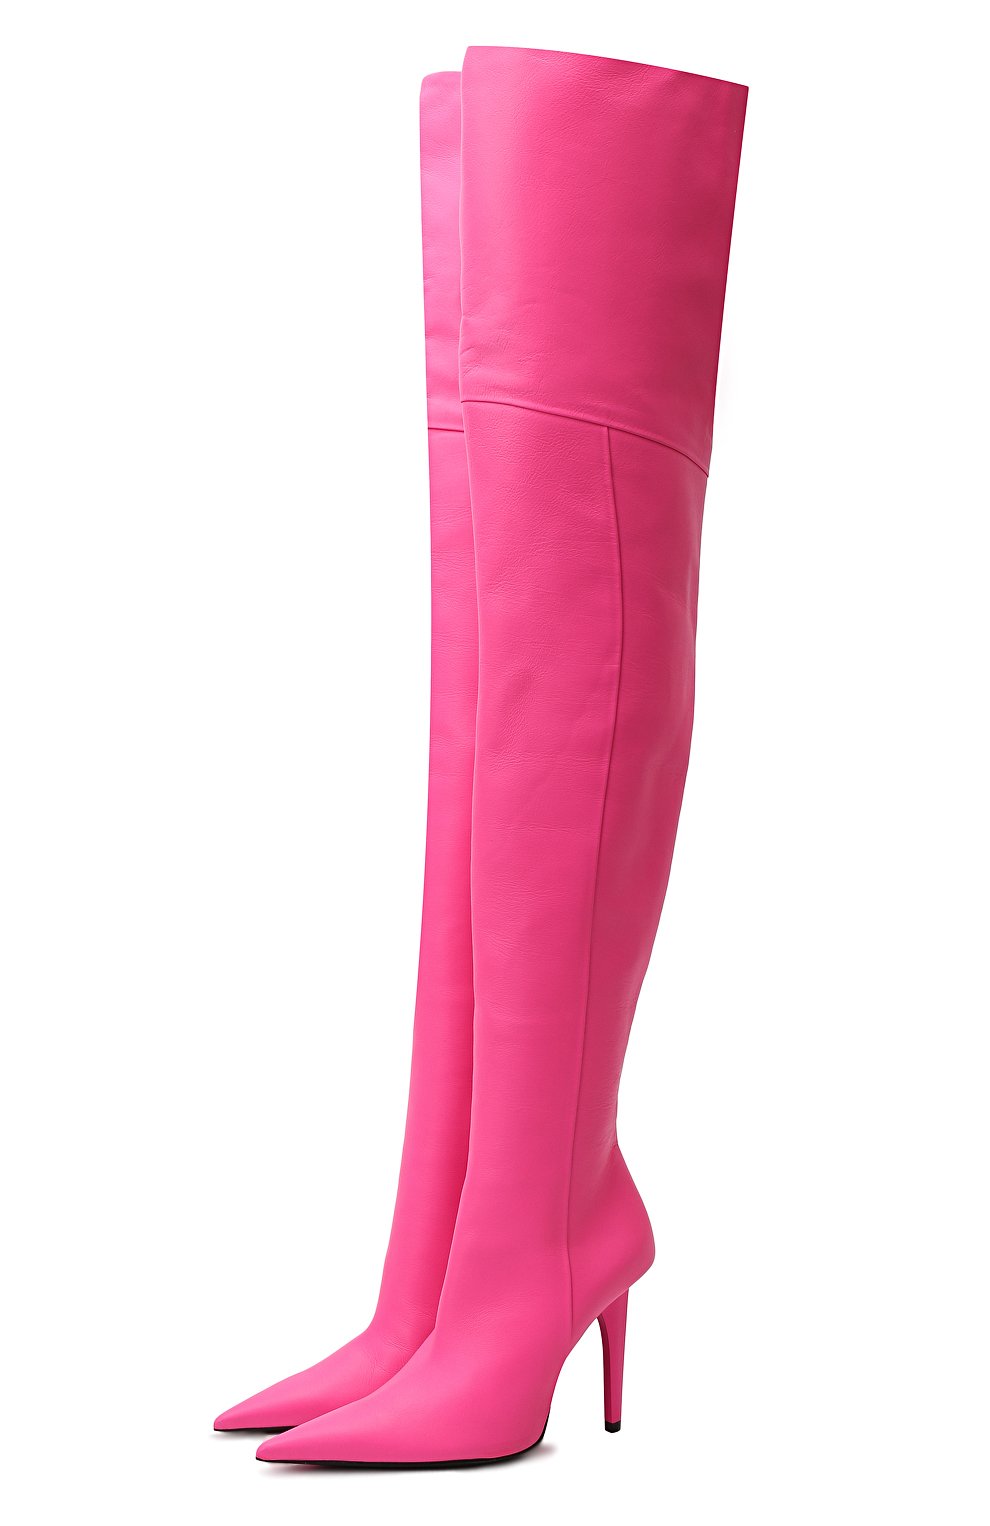 Кожаные ботфорты | Balenciaga | Розовый - 1